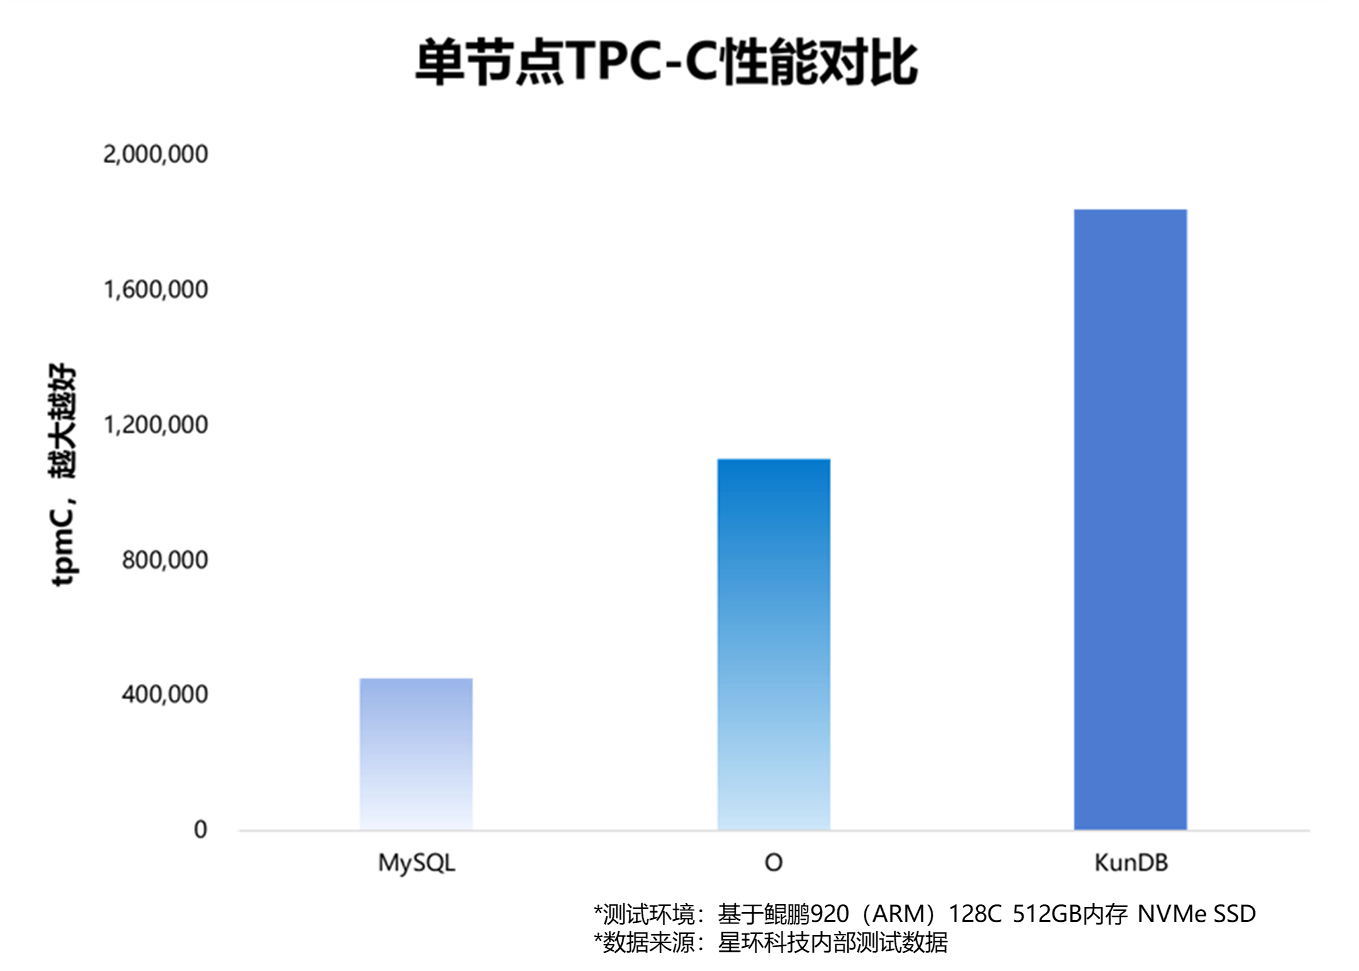 破记录！国产数据库KunDB 单节点TPC-C事务性能超180万tpmC